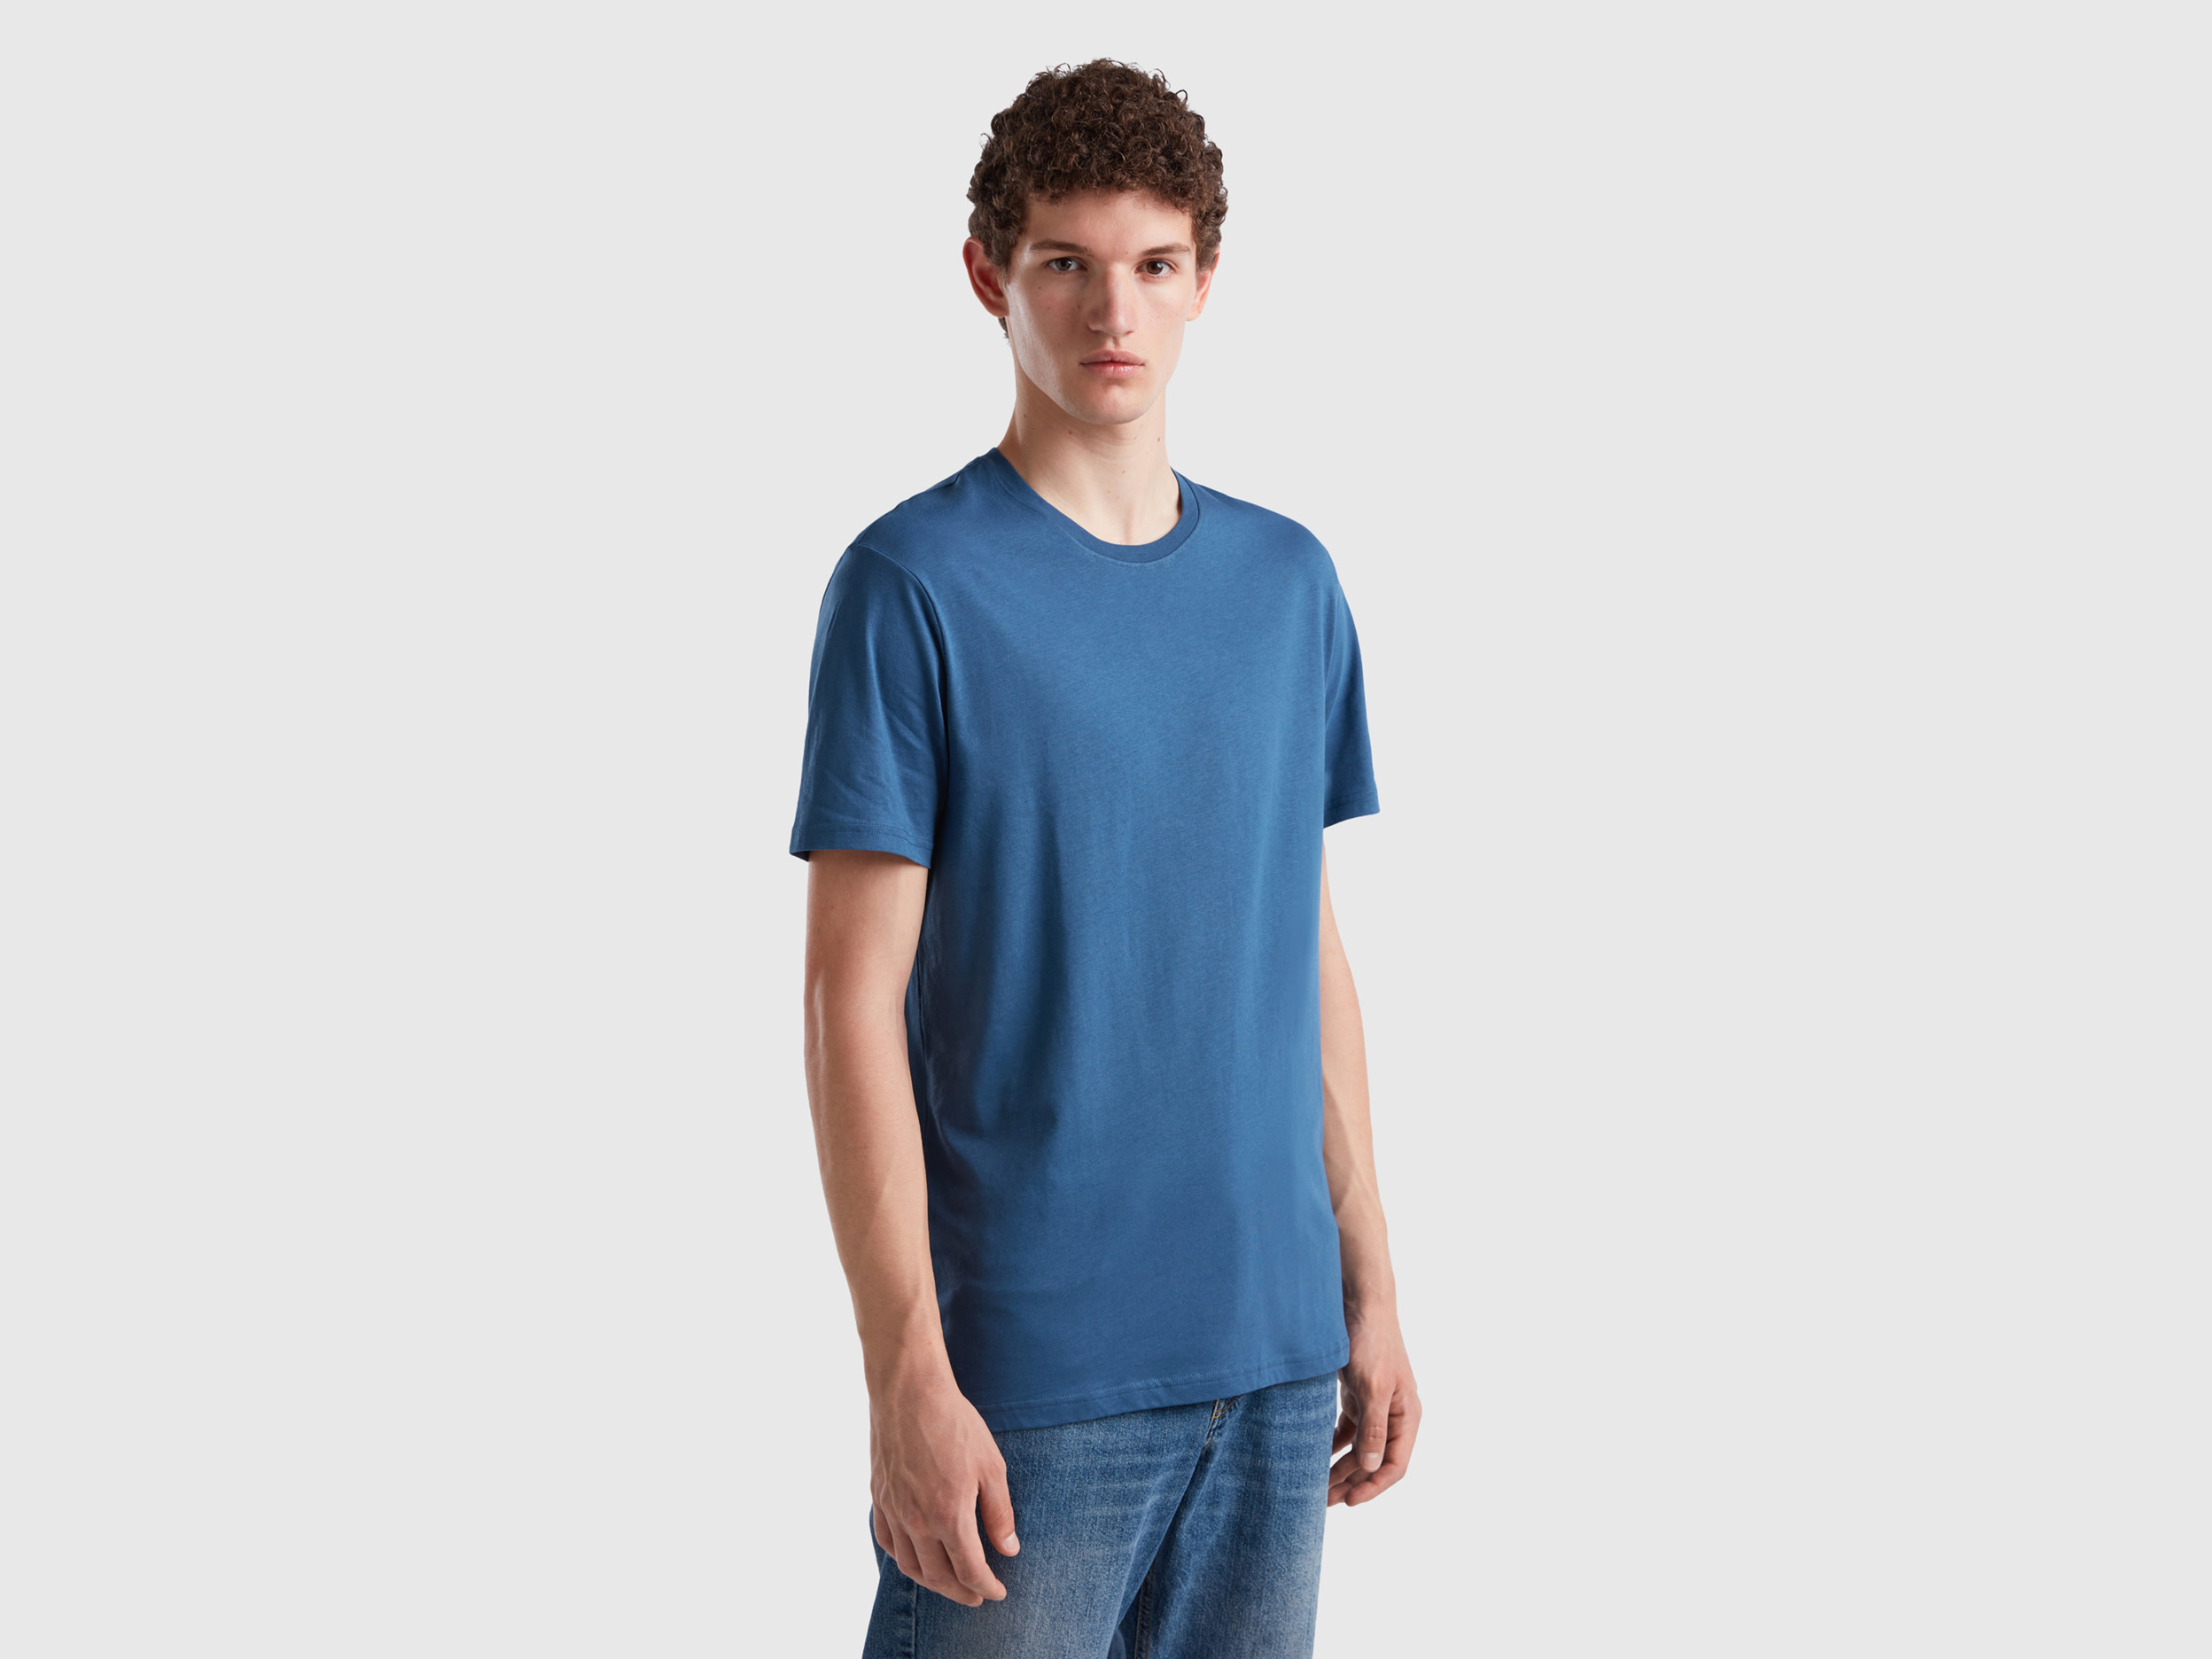 Benetton, Air Force Blue T-shirt, size XXXL, Air Force Blue, Men